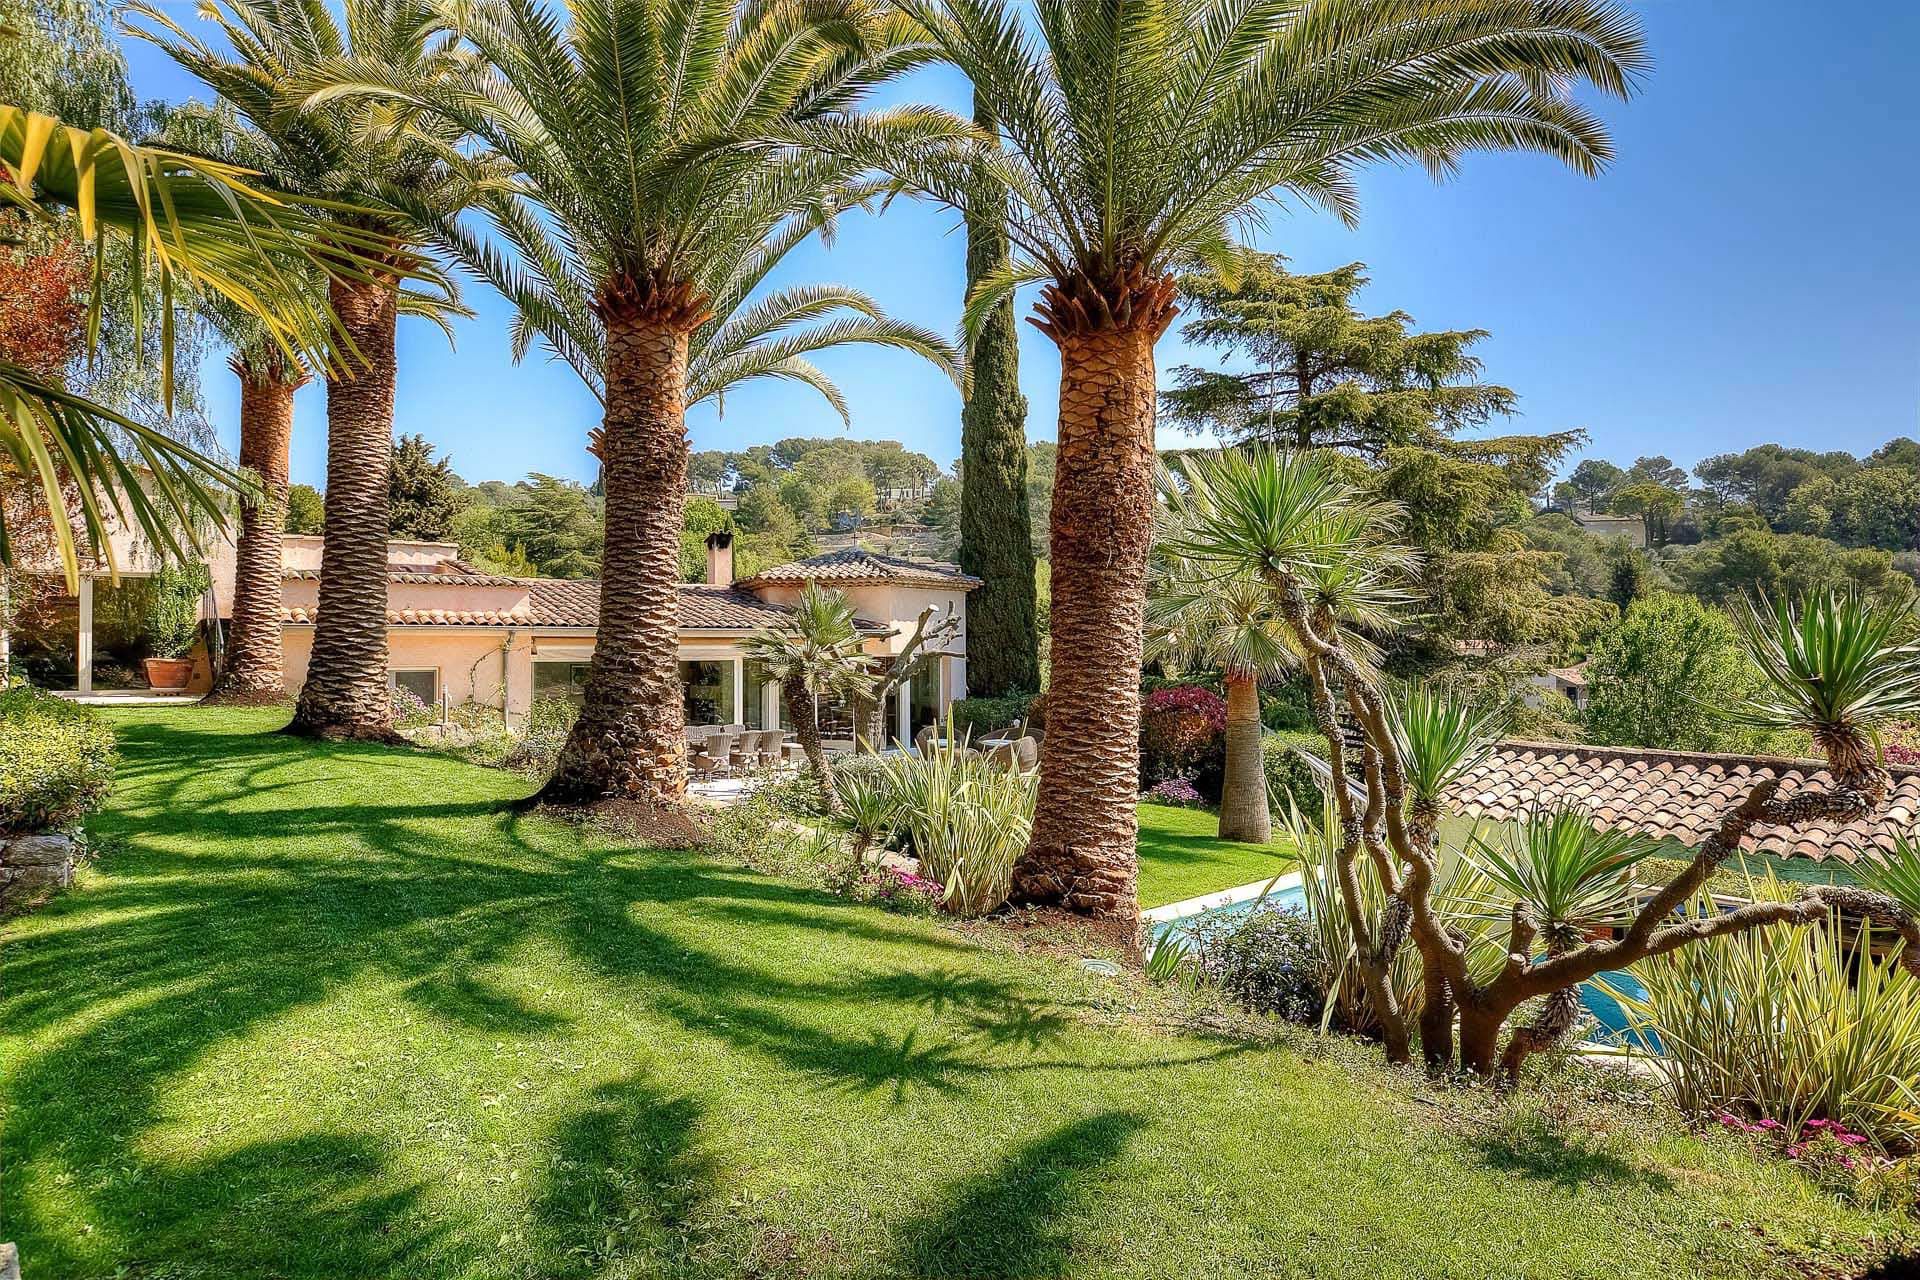 Méditerranée Location Villa with Private pool in Mougins, Côte d'Azur